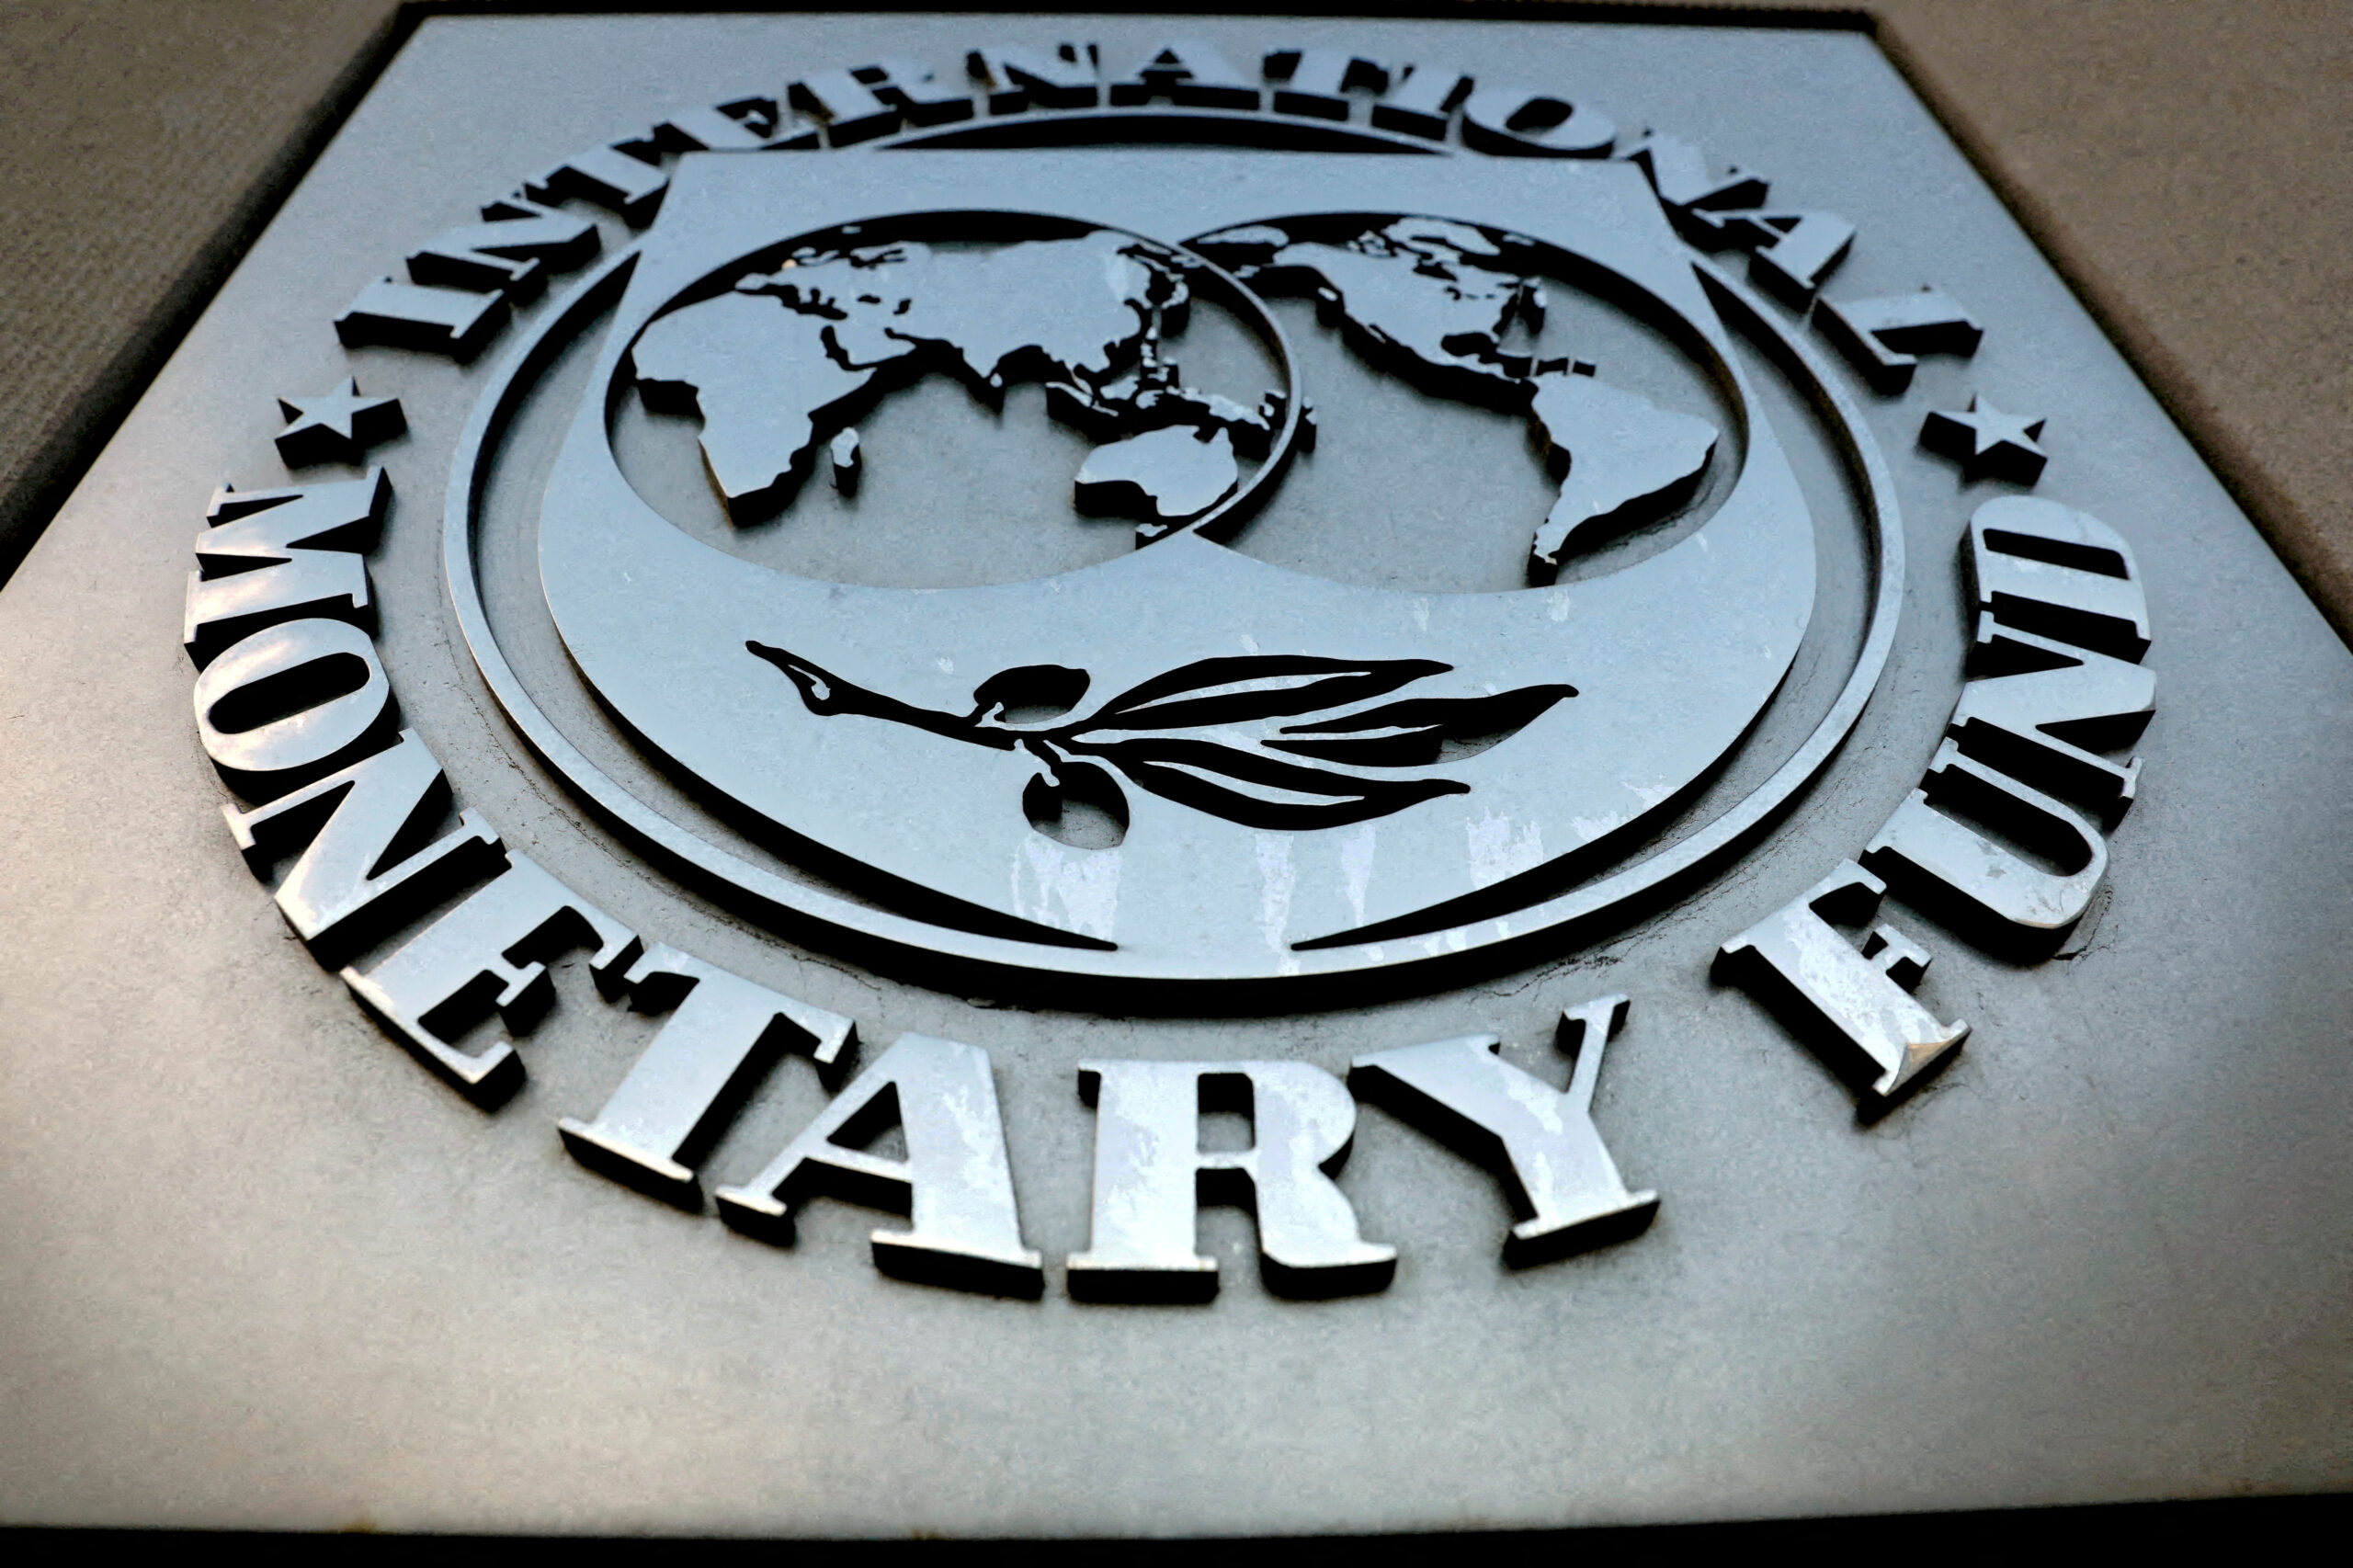 IMF loan to Kenya